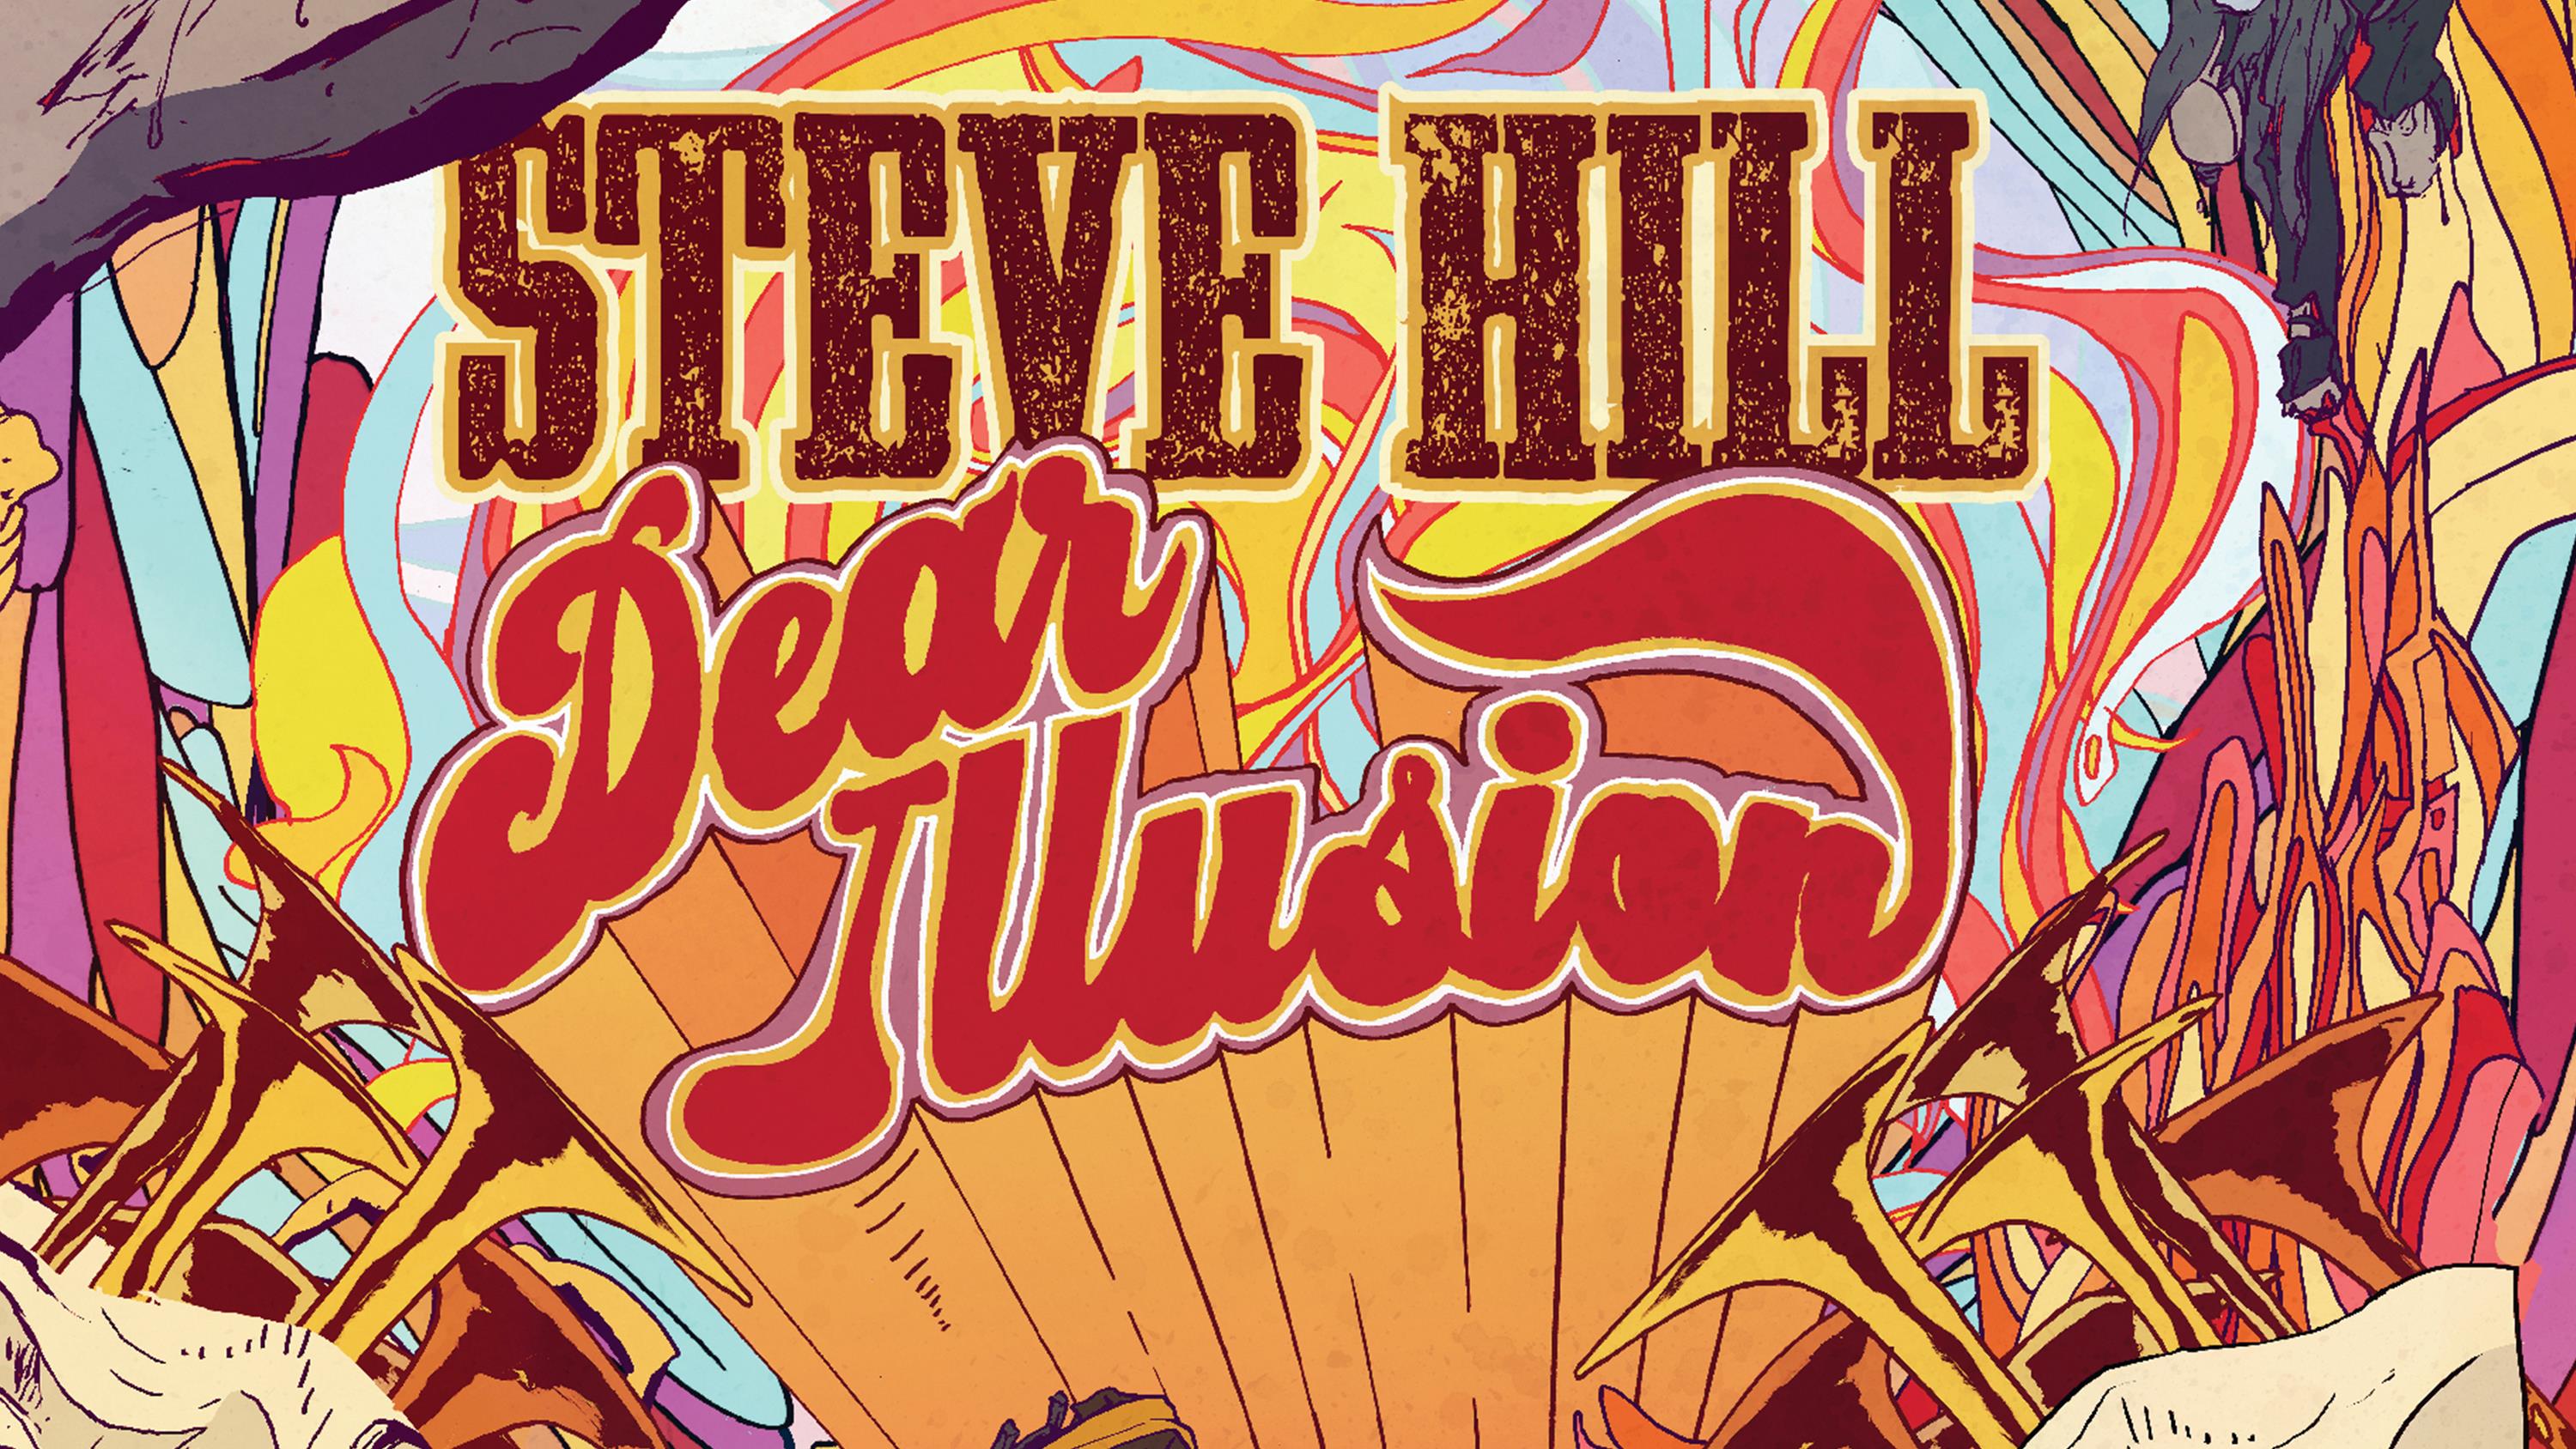 Entrevue culturelle avec Steve Hill sur son nouvel album, Dear Illusion
Entrevue culturelle avec Steve Hill sur son nouvel album, Dear Illusion